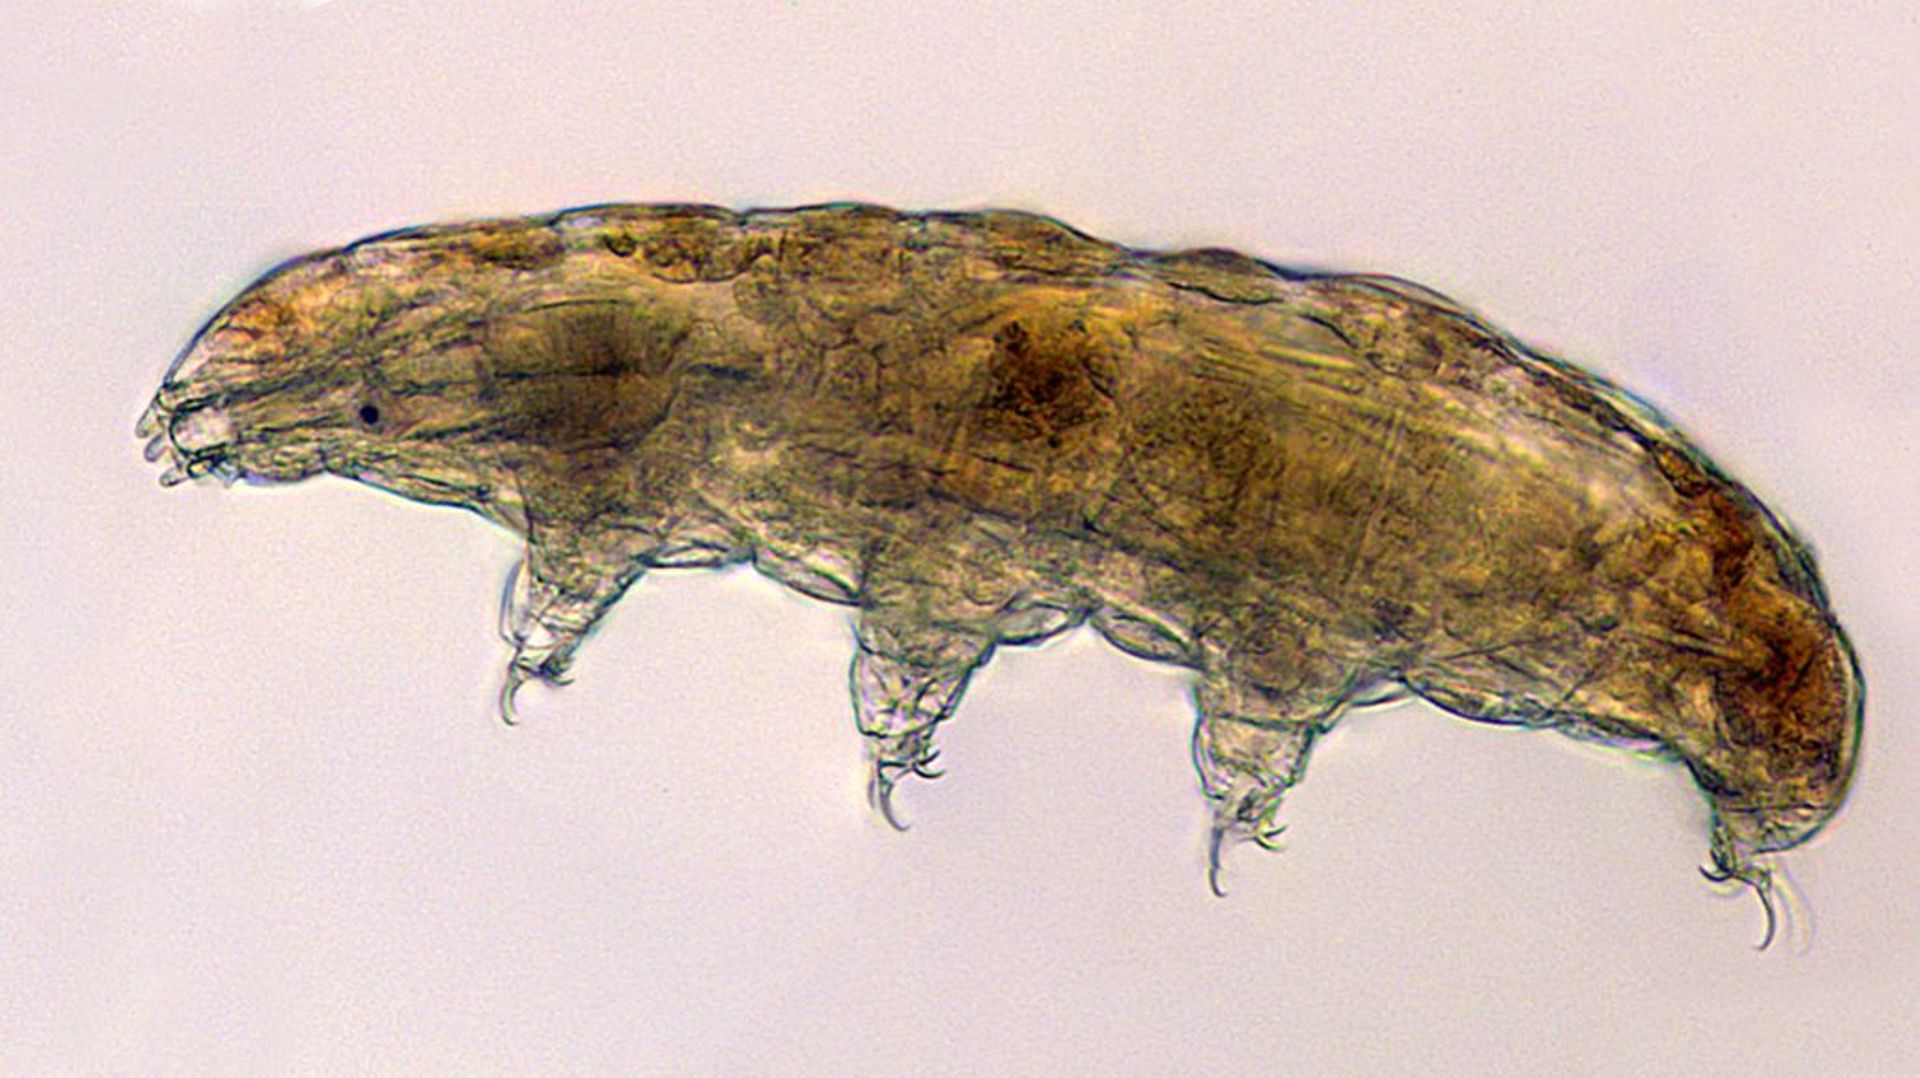 Le tardigrade ou ourson d’eau, organisme extrêmement résistant est qualifié d’extrêmophile, il arrive à survivre dans des conditions extrêmes.